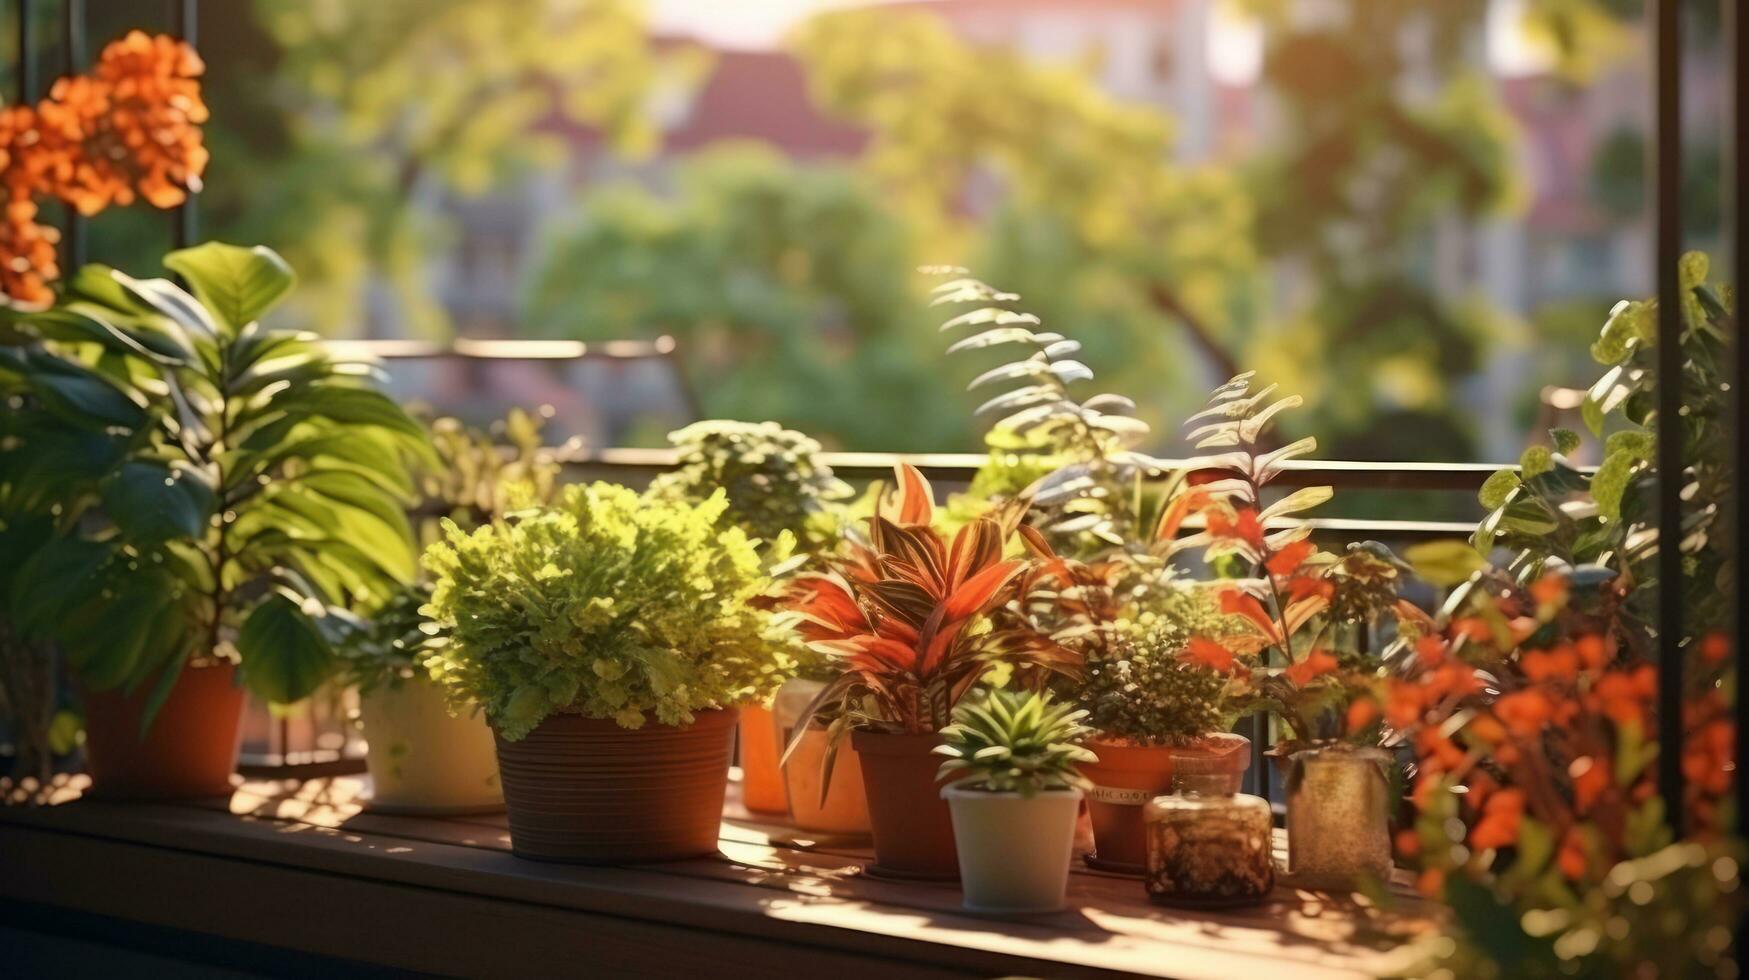 Terrasse mit eingetopft Pflanzen und Blumen foto